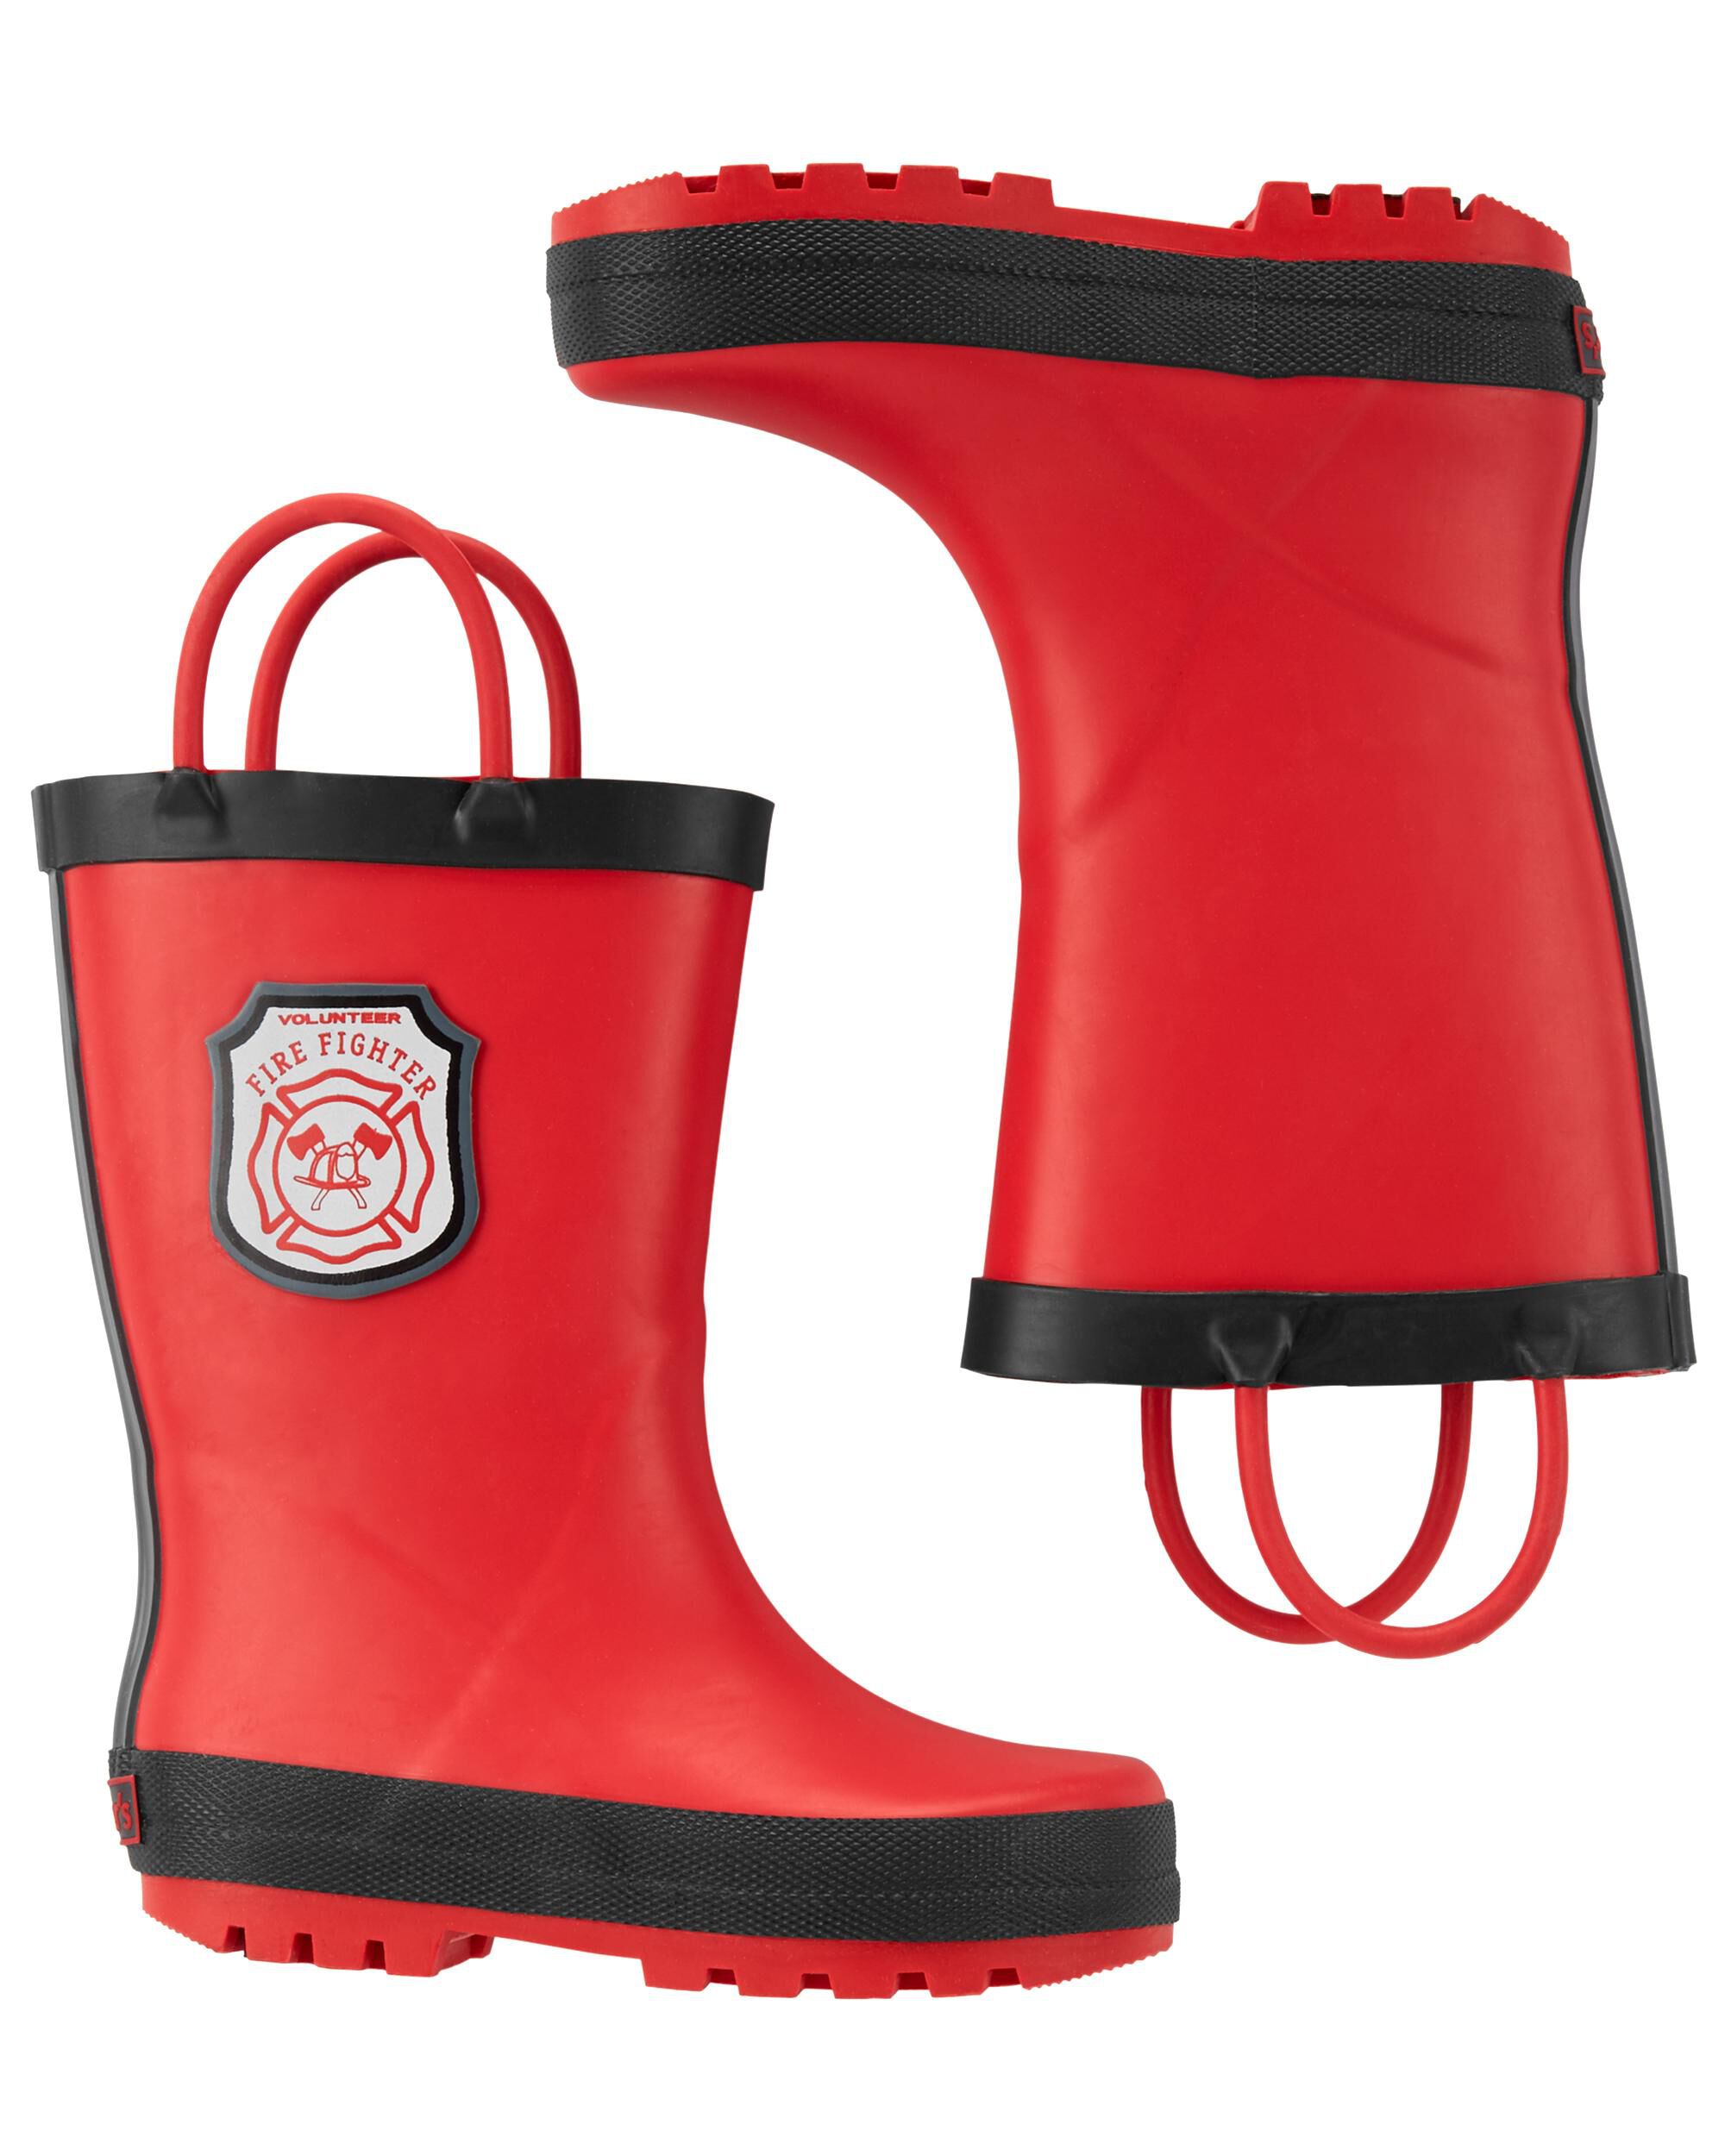 carter's fireman rain boots